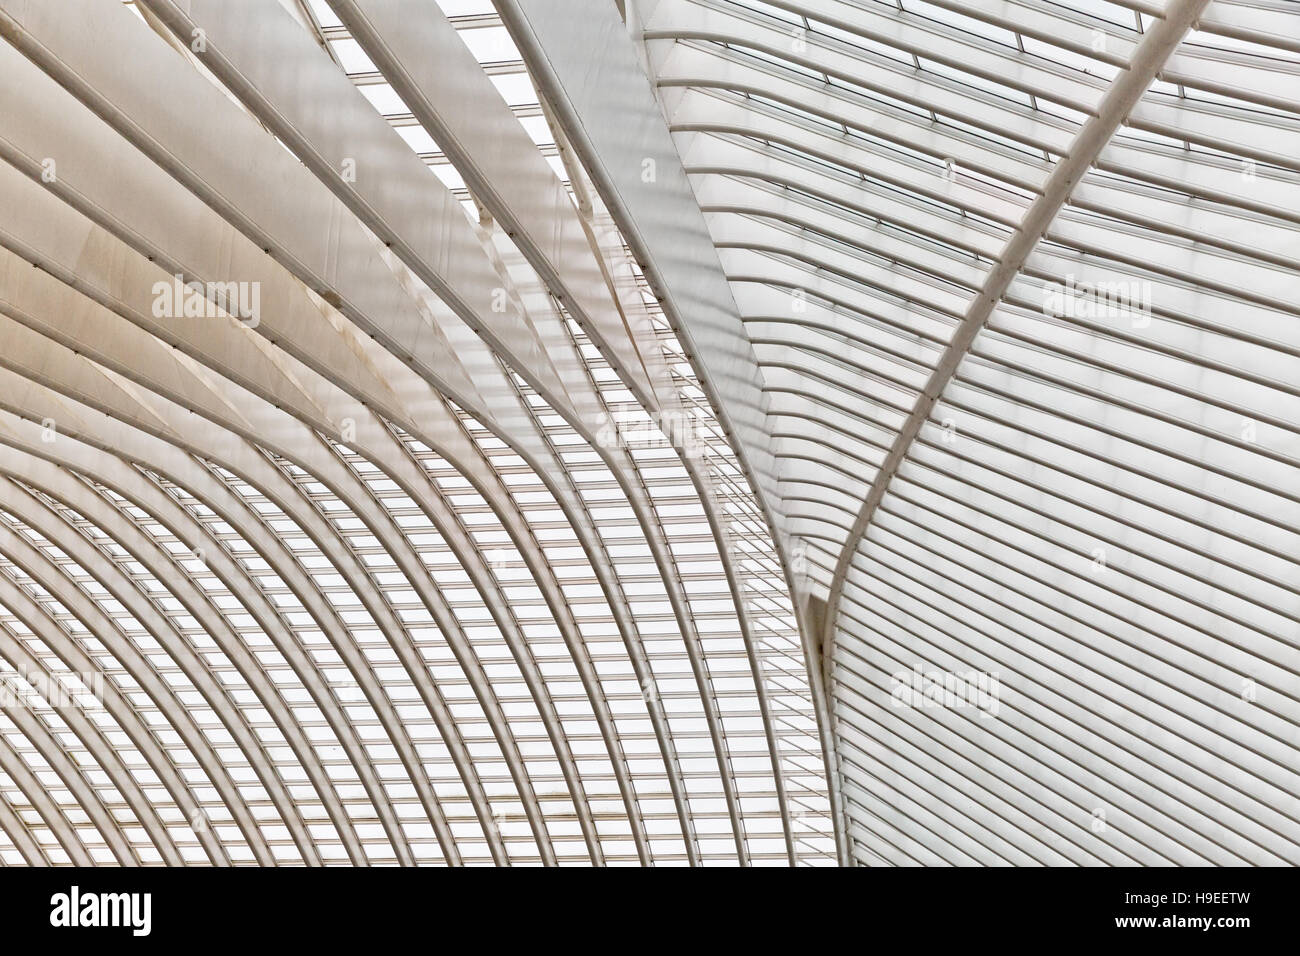 Liège, Belgique - Décembre 2014 : Abstract view sur le toit de la gare de Liège-Guillemins, conçue par Santiago Calatrava. Banque D'Images